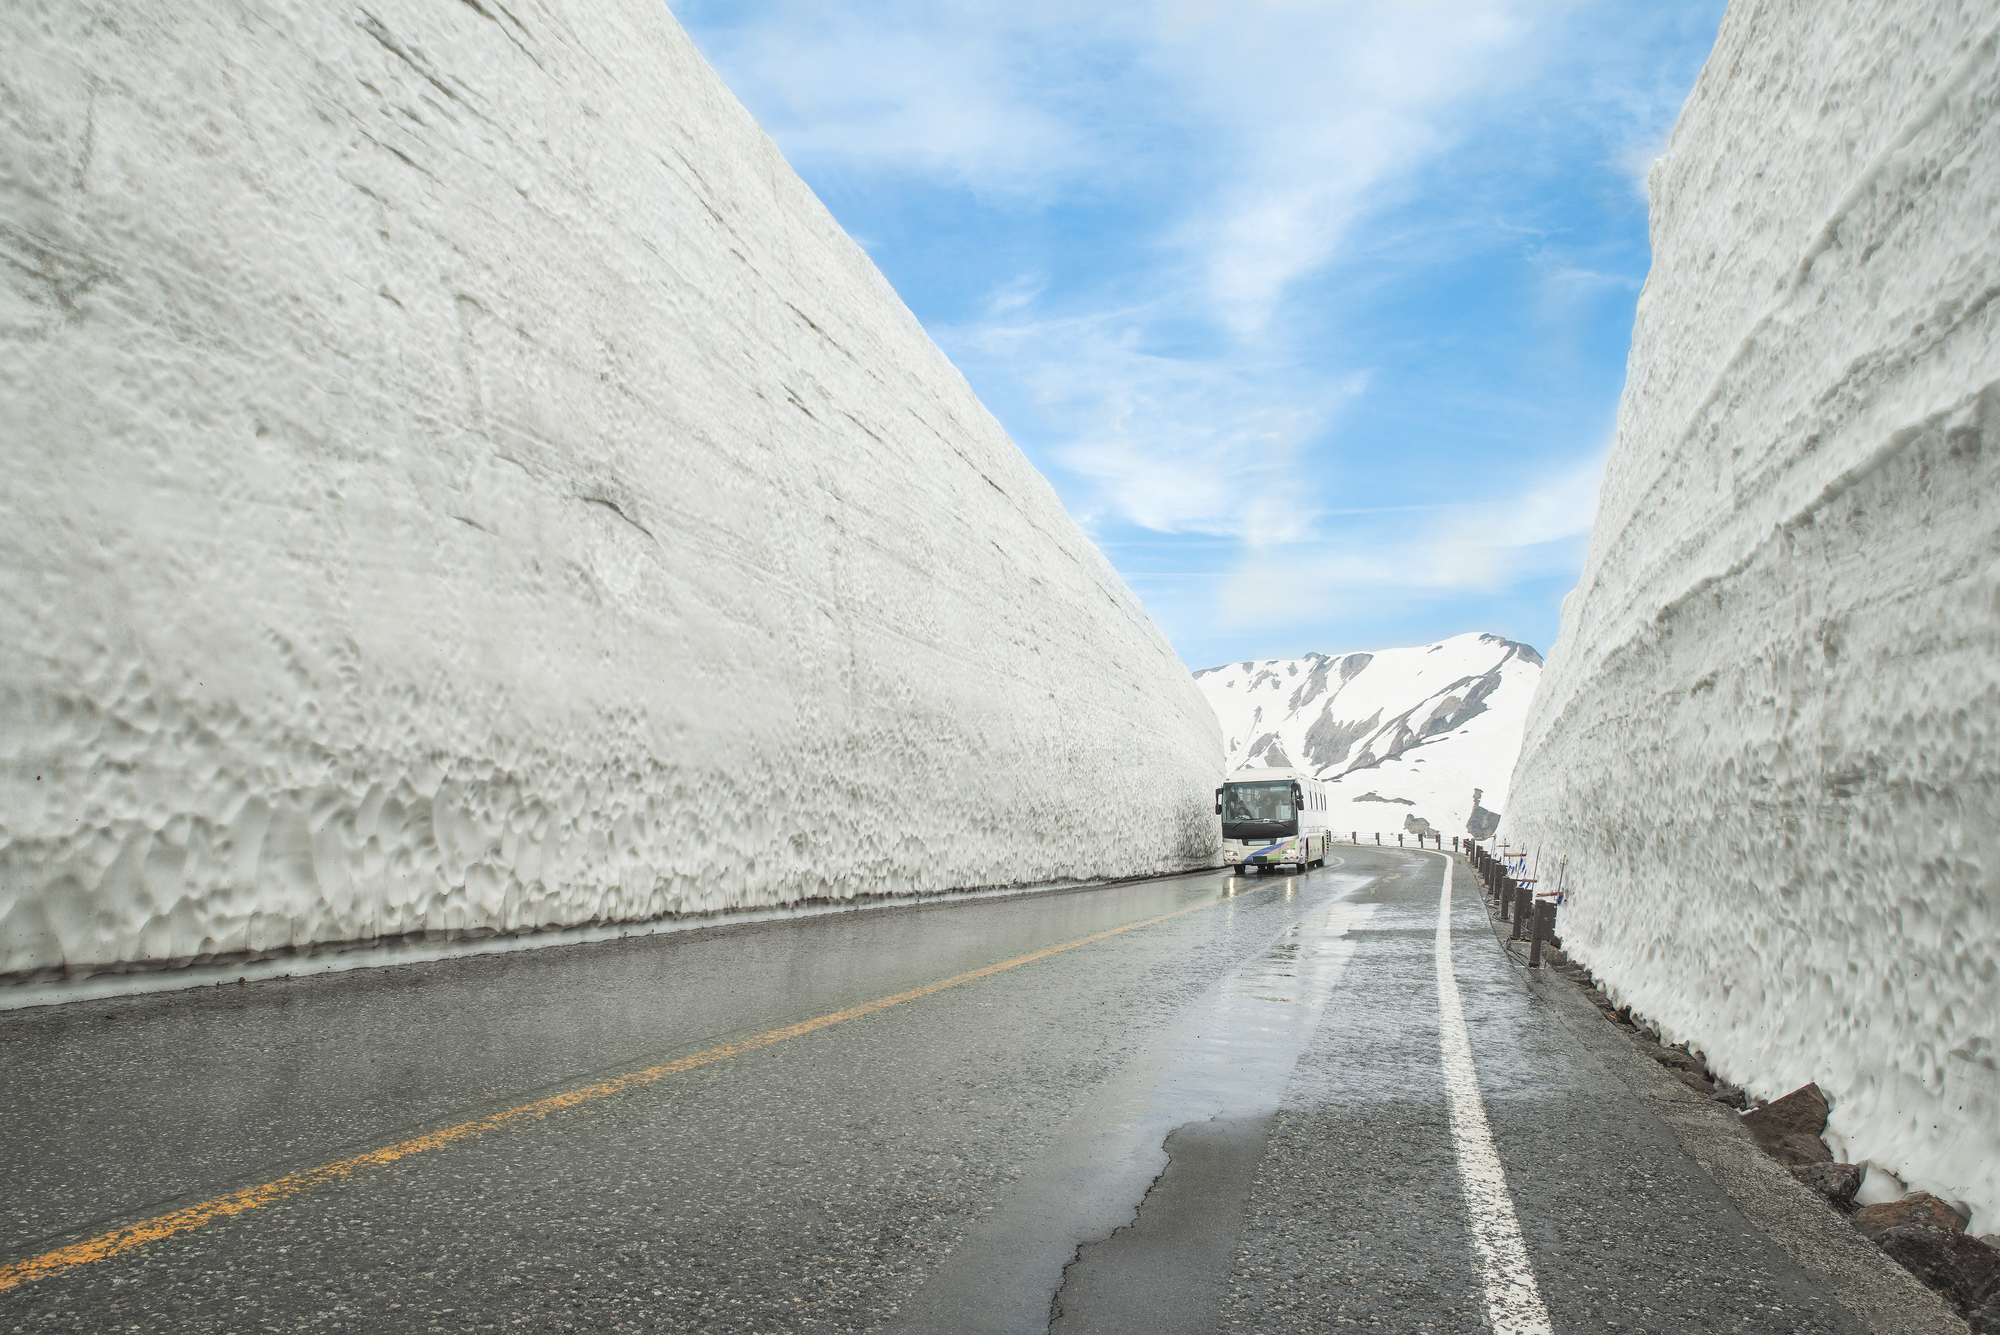 Bis zu 20 Meter hoch sind die Wände nach einem schneereichen Winter.